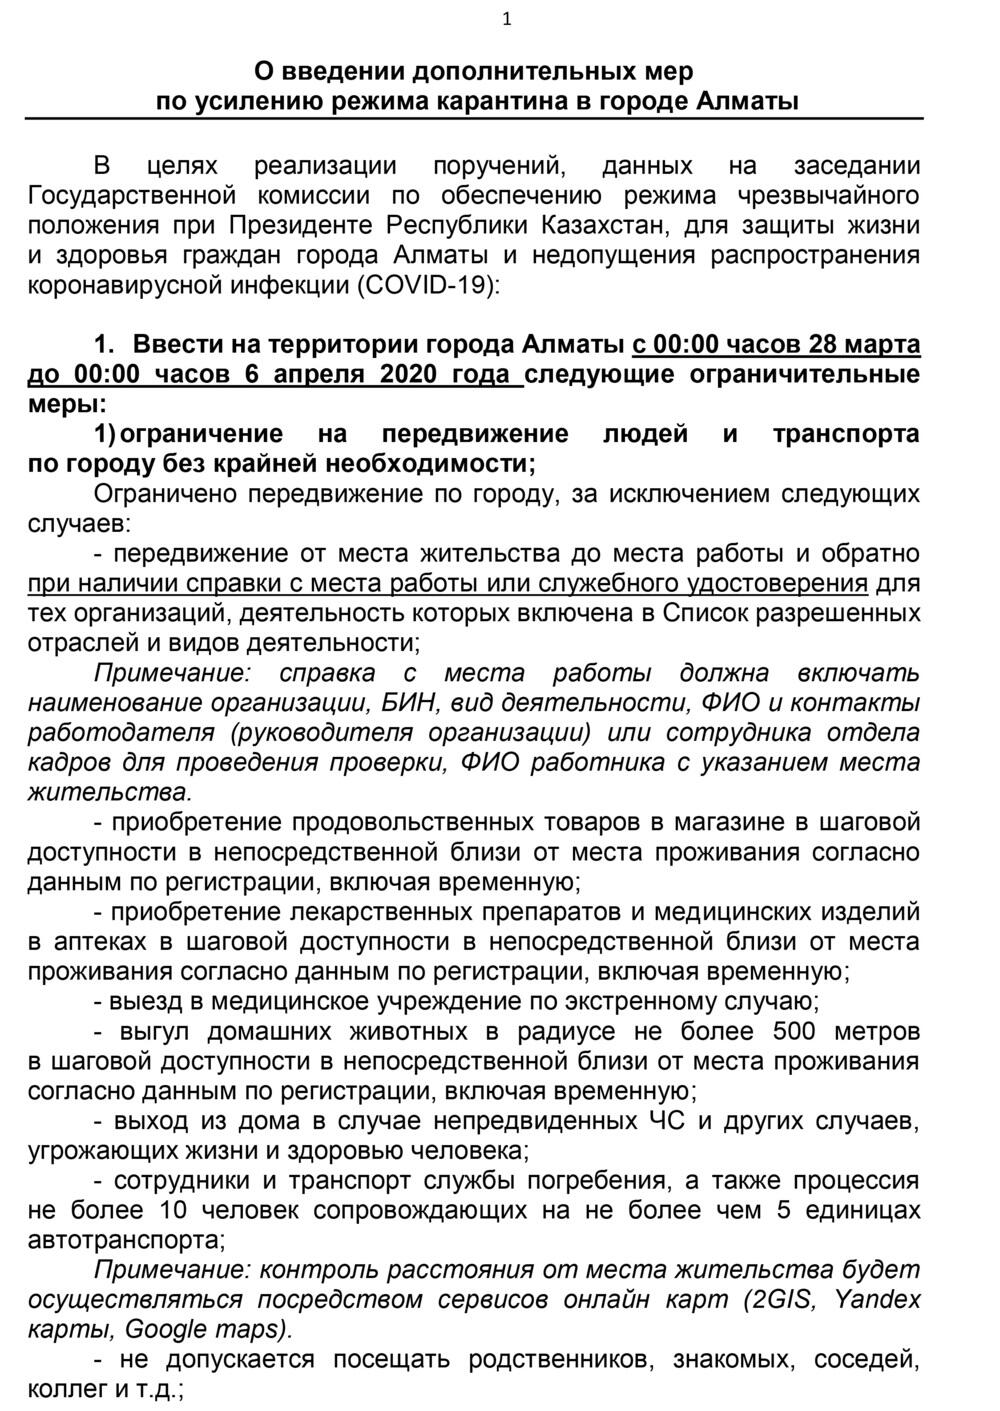 Протокол штаба Алматы по усилению карантина